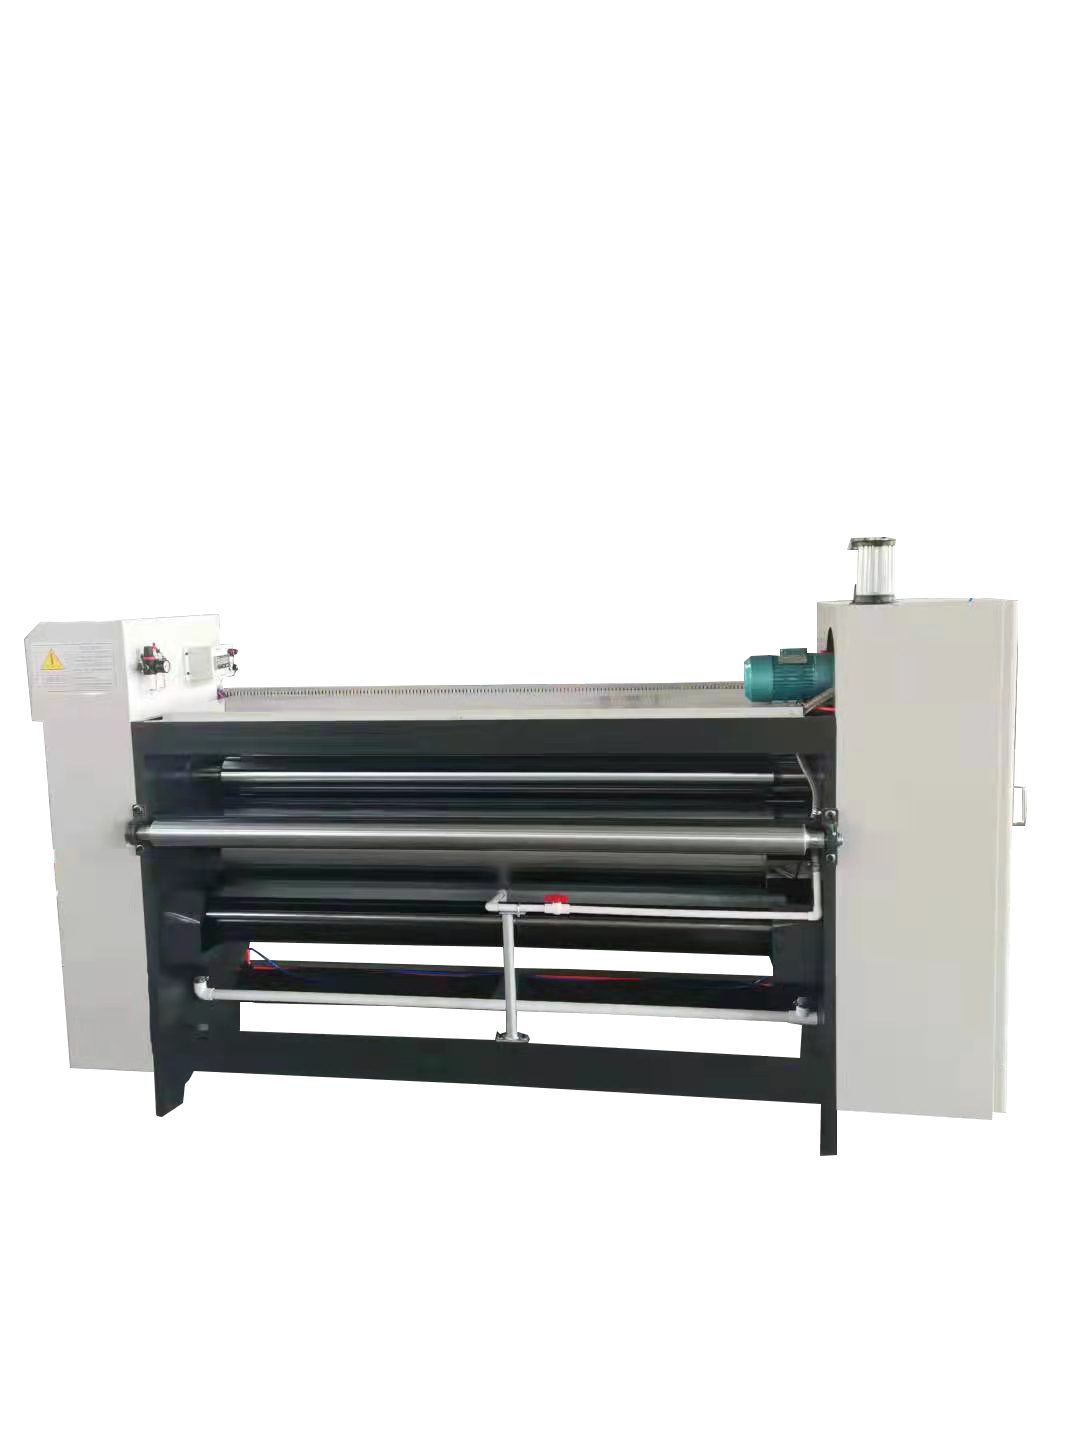 瓦楞纸皮机 单瓦印刷机 瓦楞纸卷印刷机 复卷机 纸皮下印刷机 单瓦机4